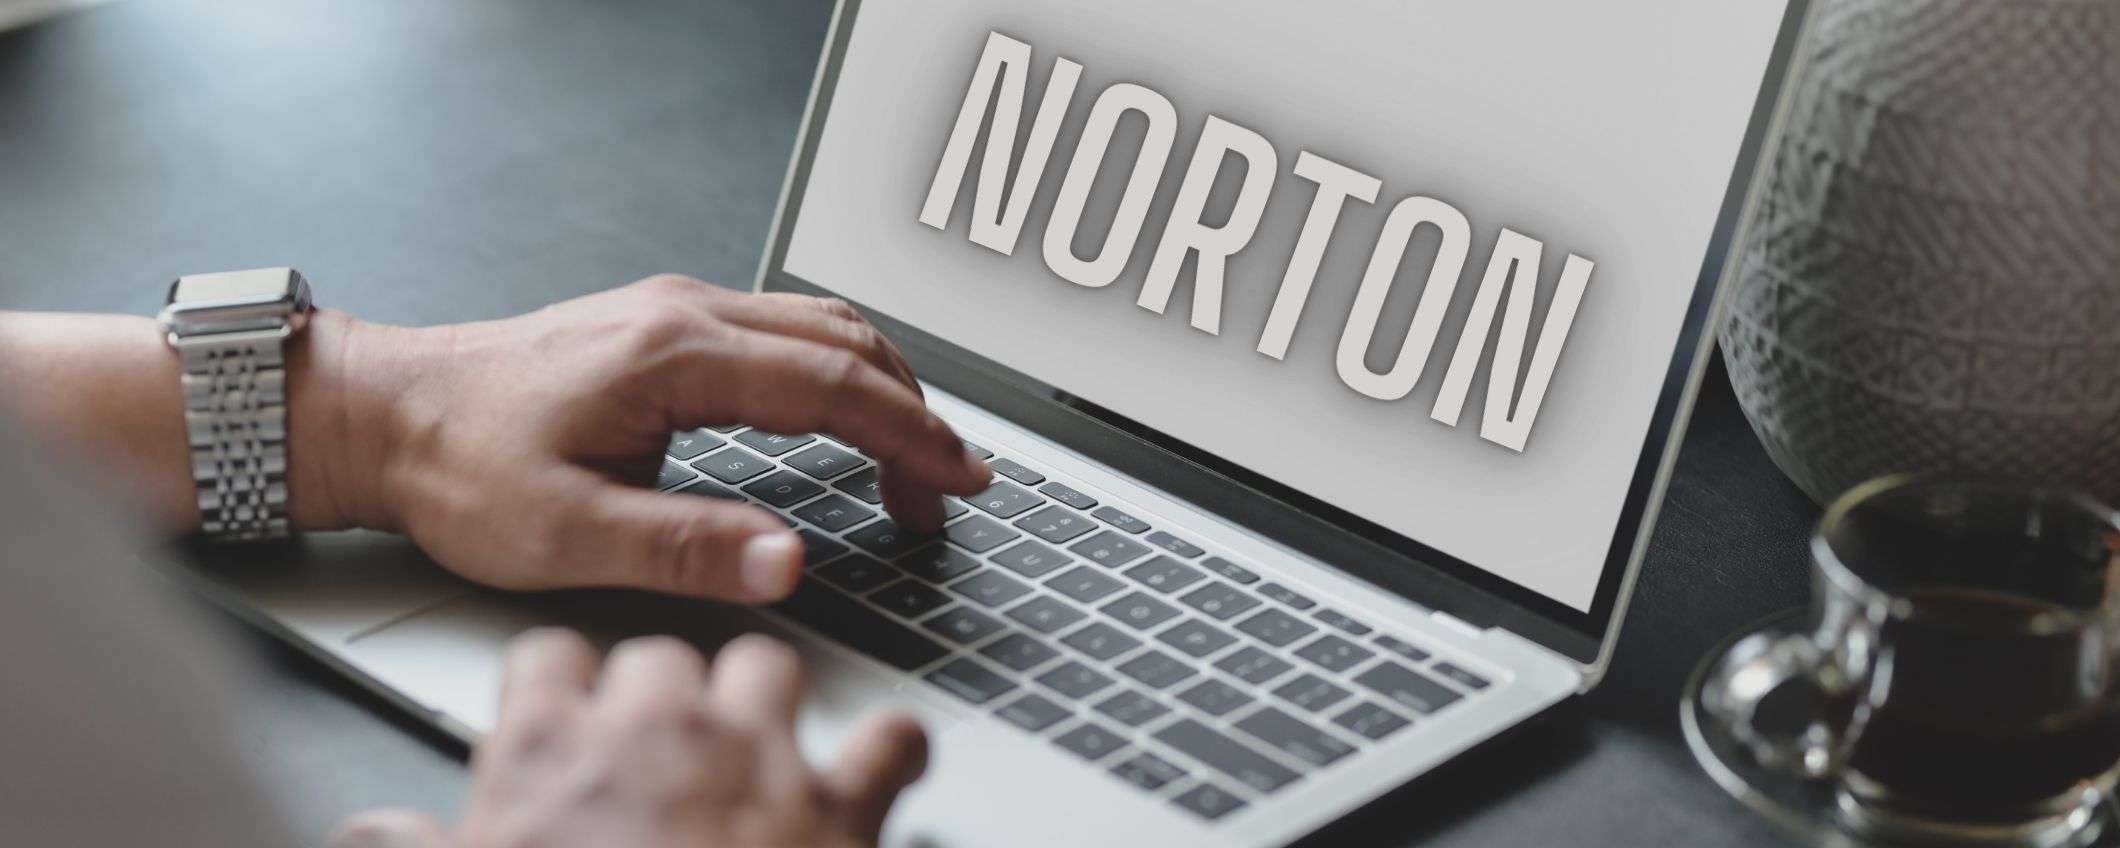 Norton Antivirus, per te abbonamento in sconto del 66%